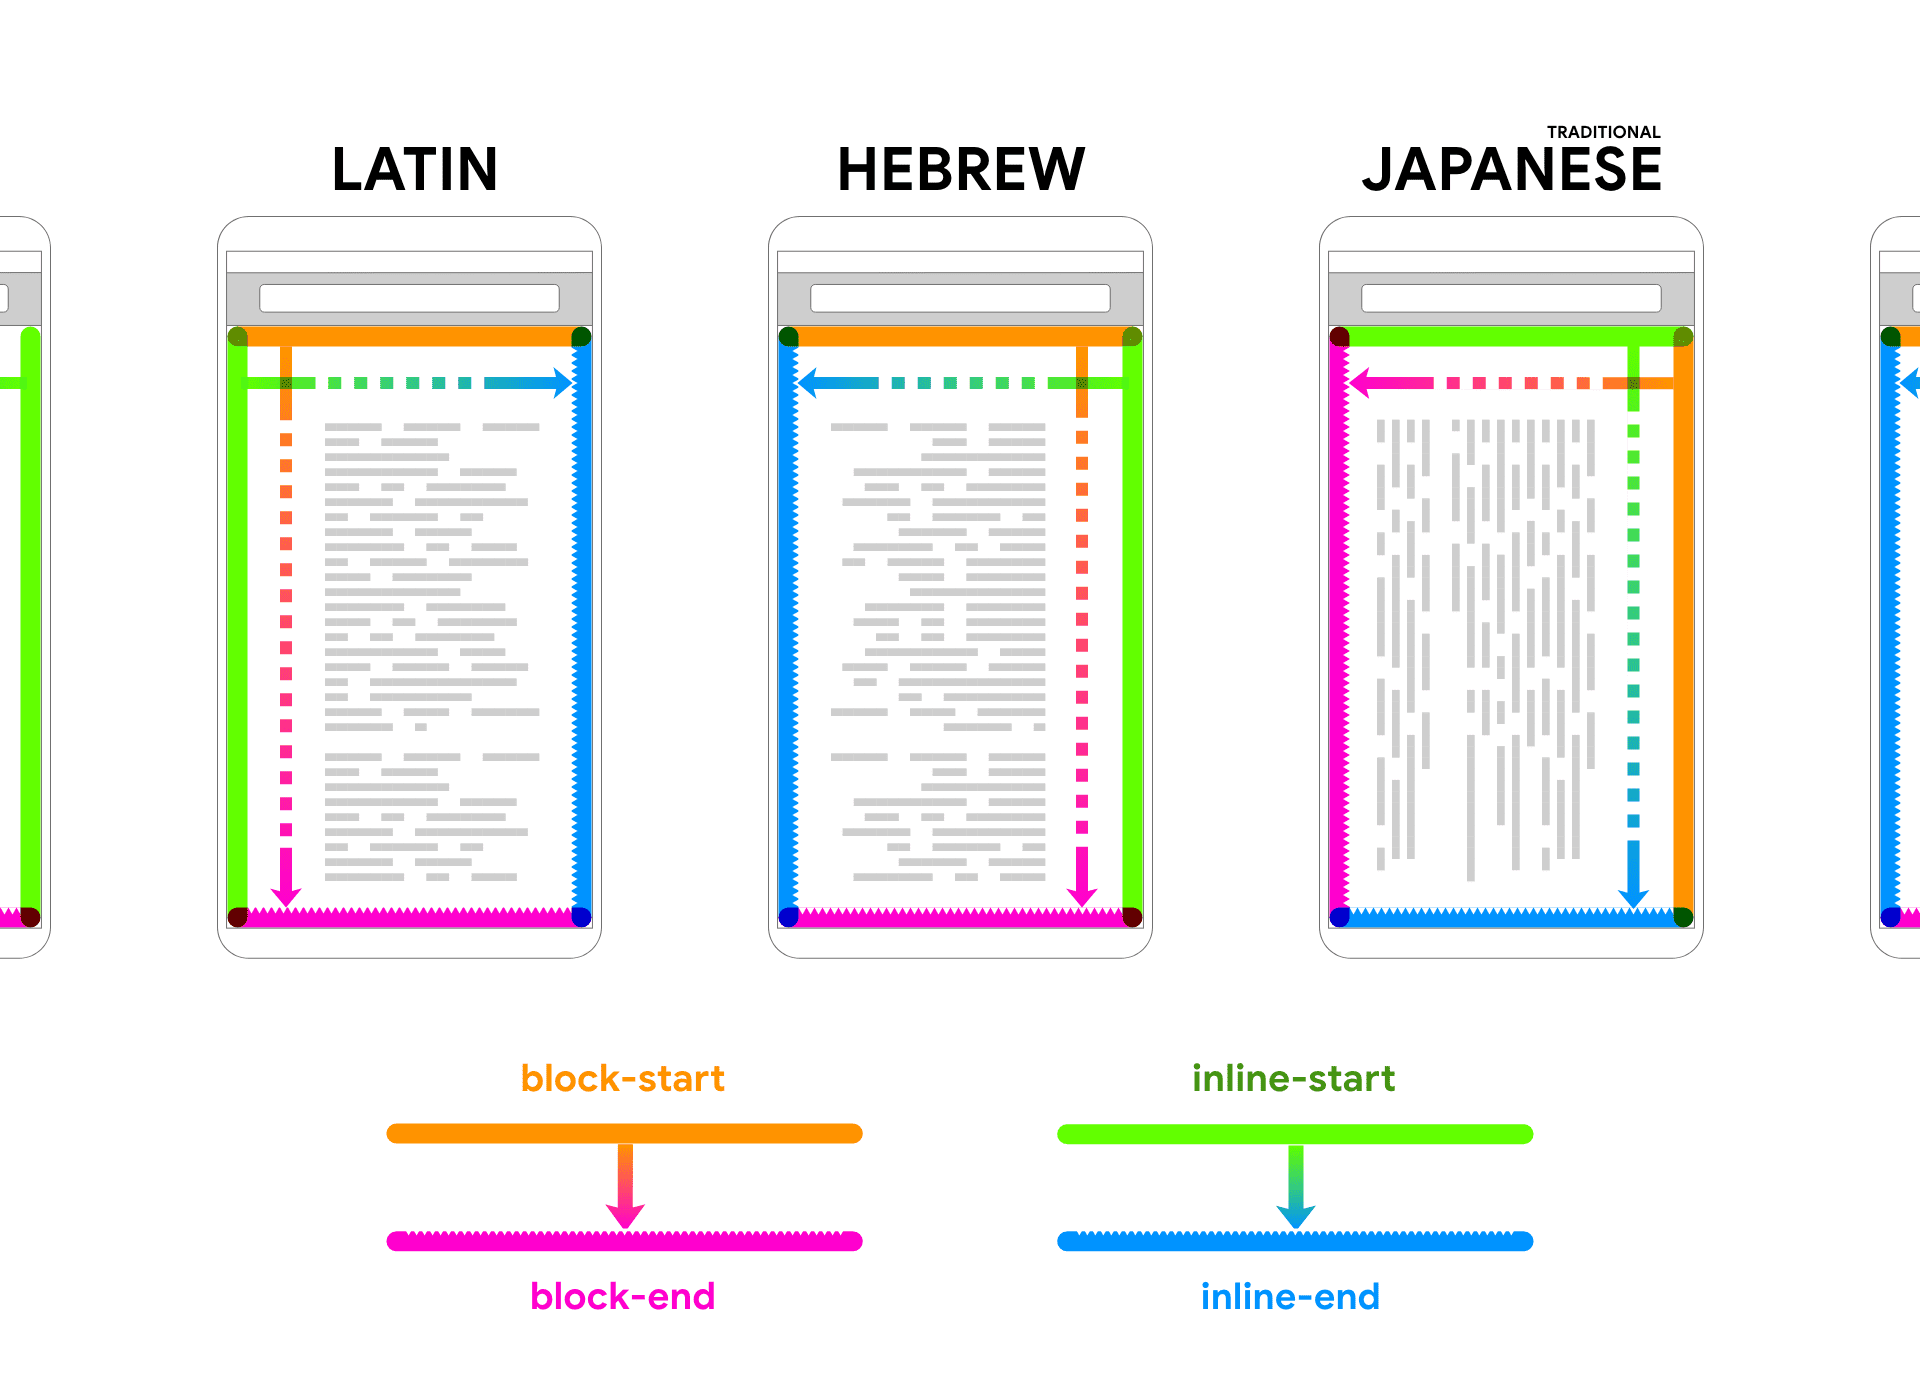 显示拉丁字母、希伯来语和日语文字，呈现设备框架内的占位文本。文字后面有箭头和颜色，有助于将区块和内嵌的两个方向关联起来。